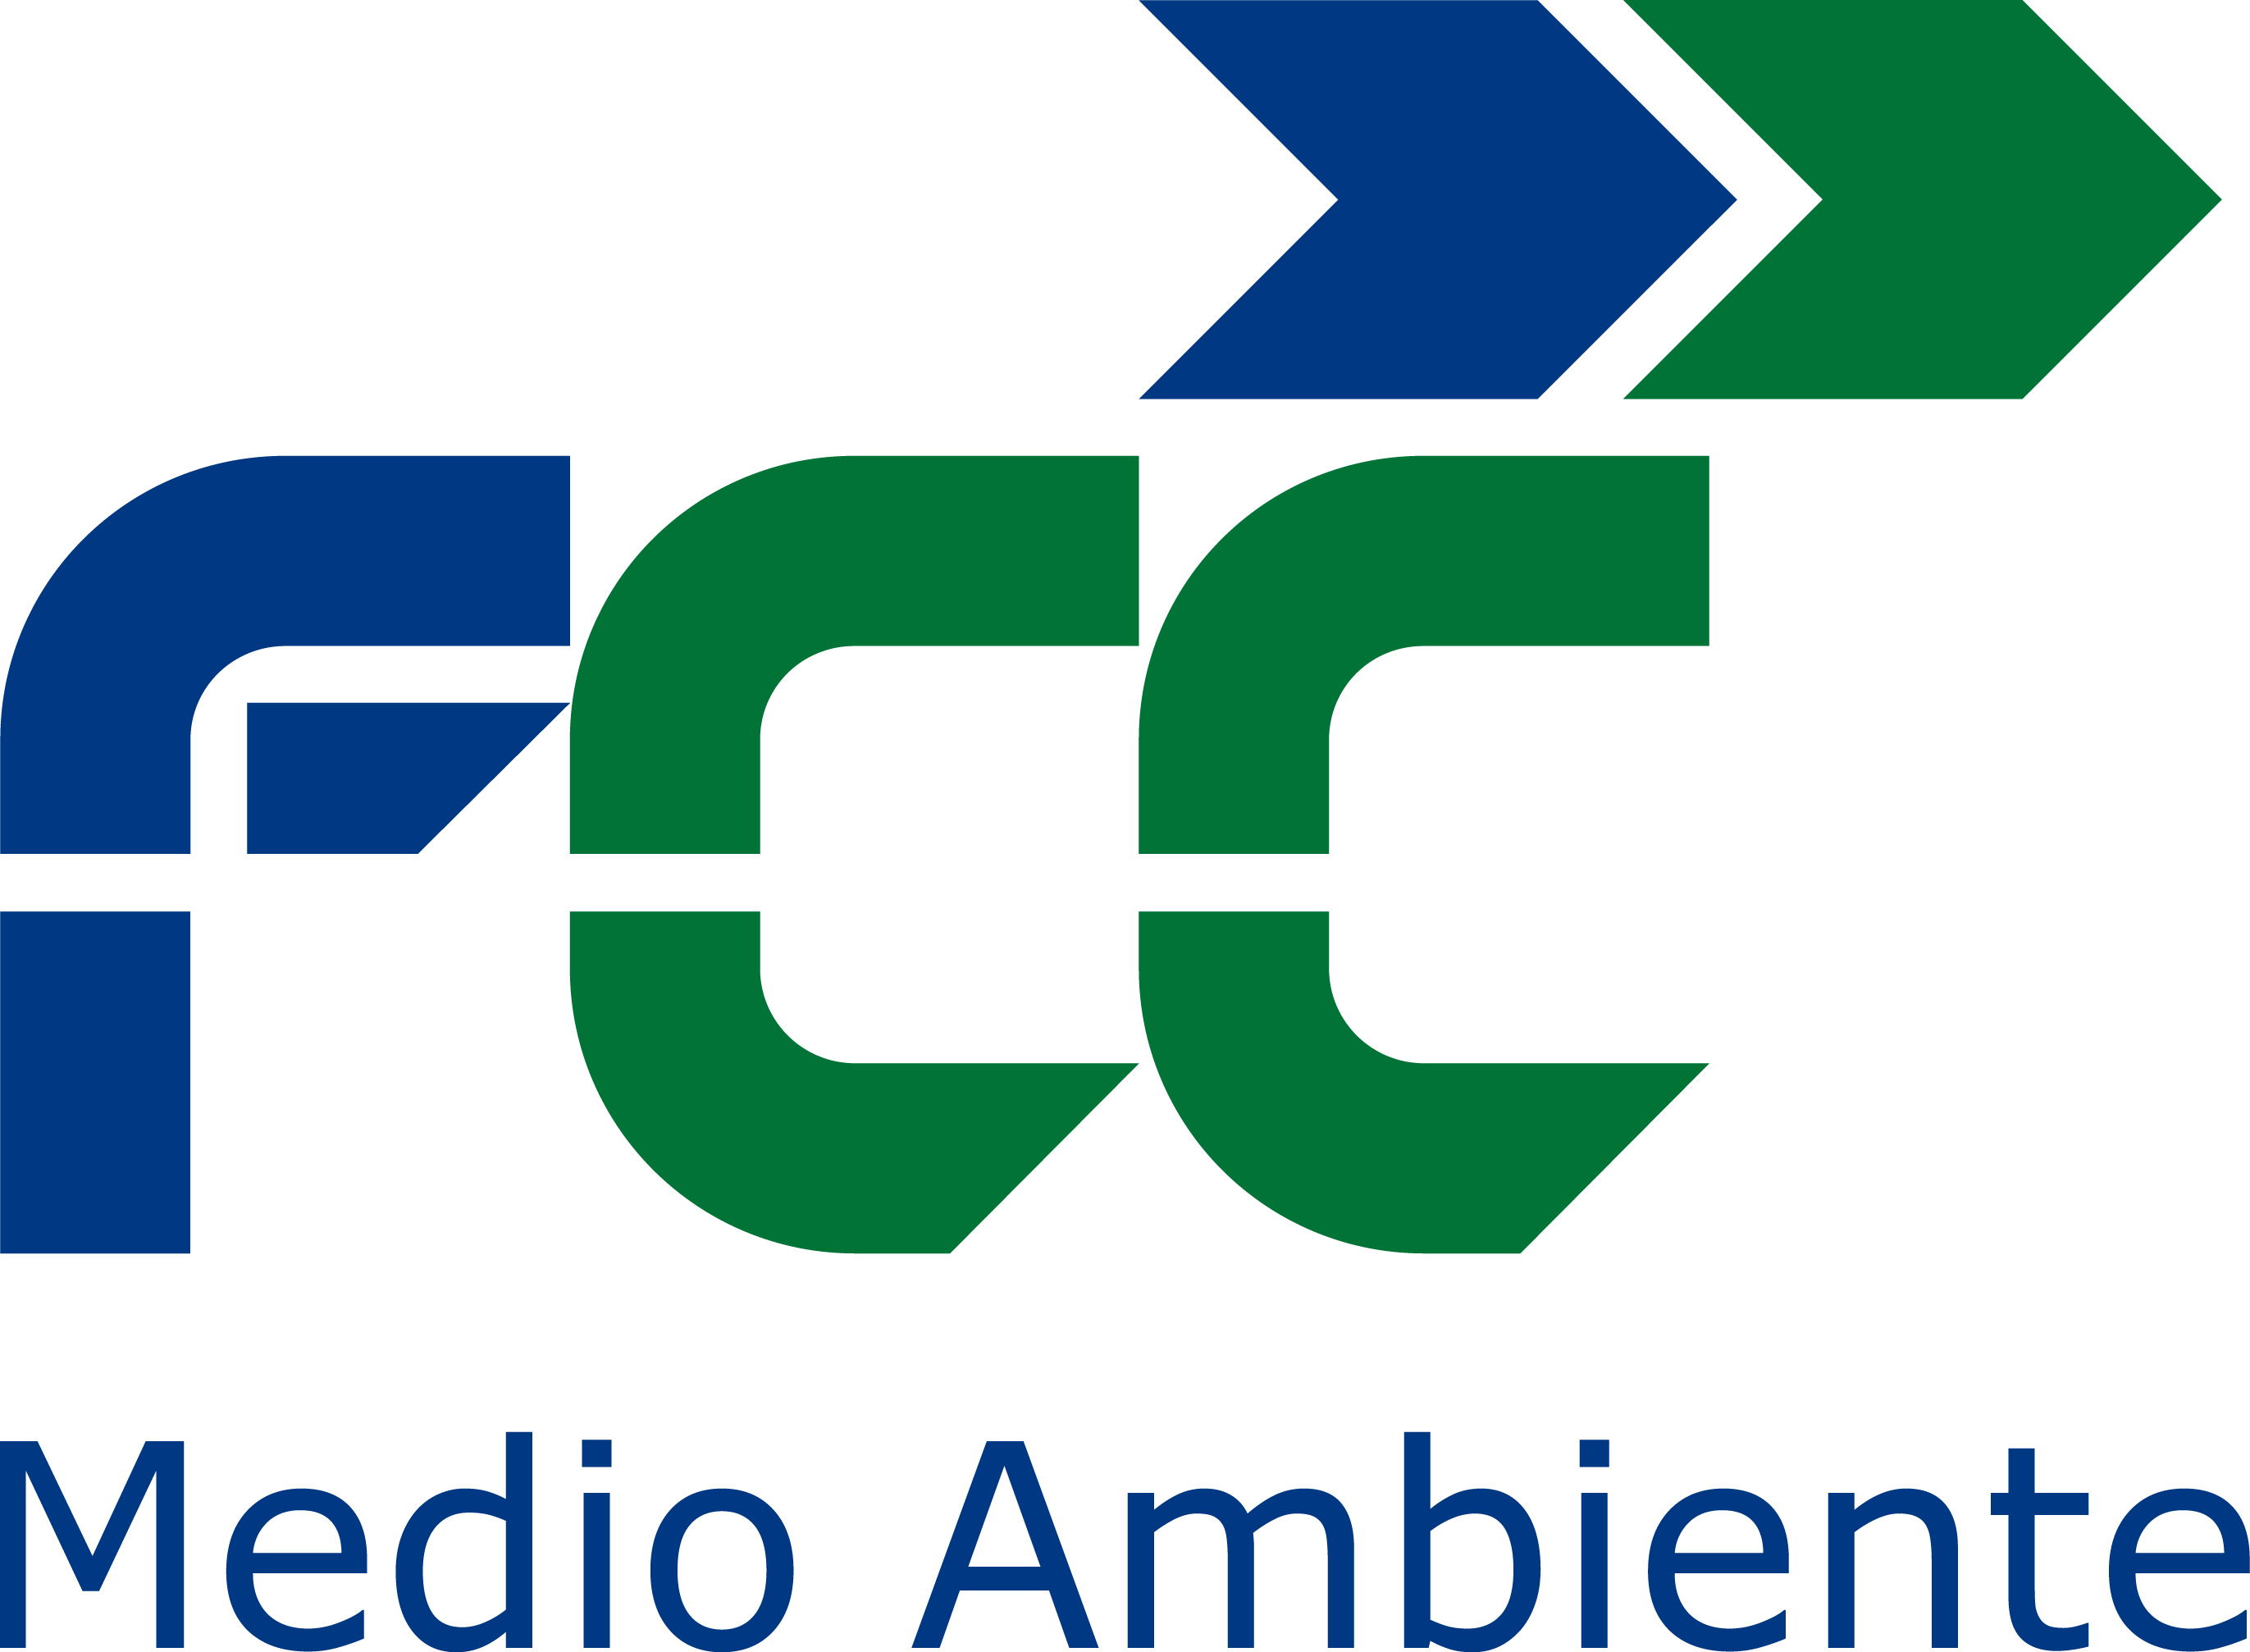 FCC Medio Ambiente